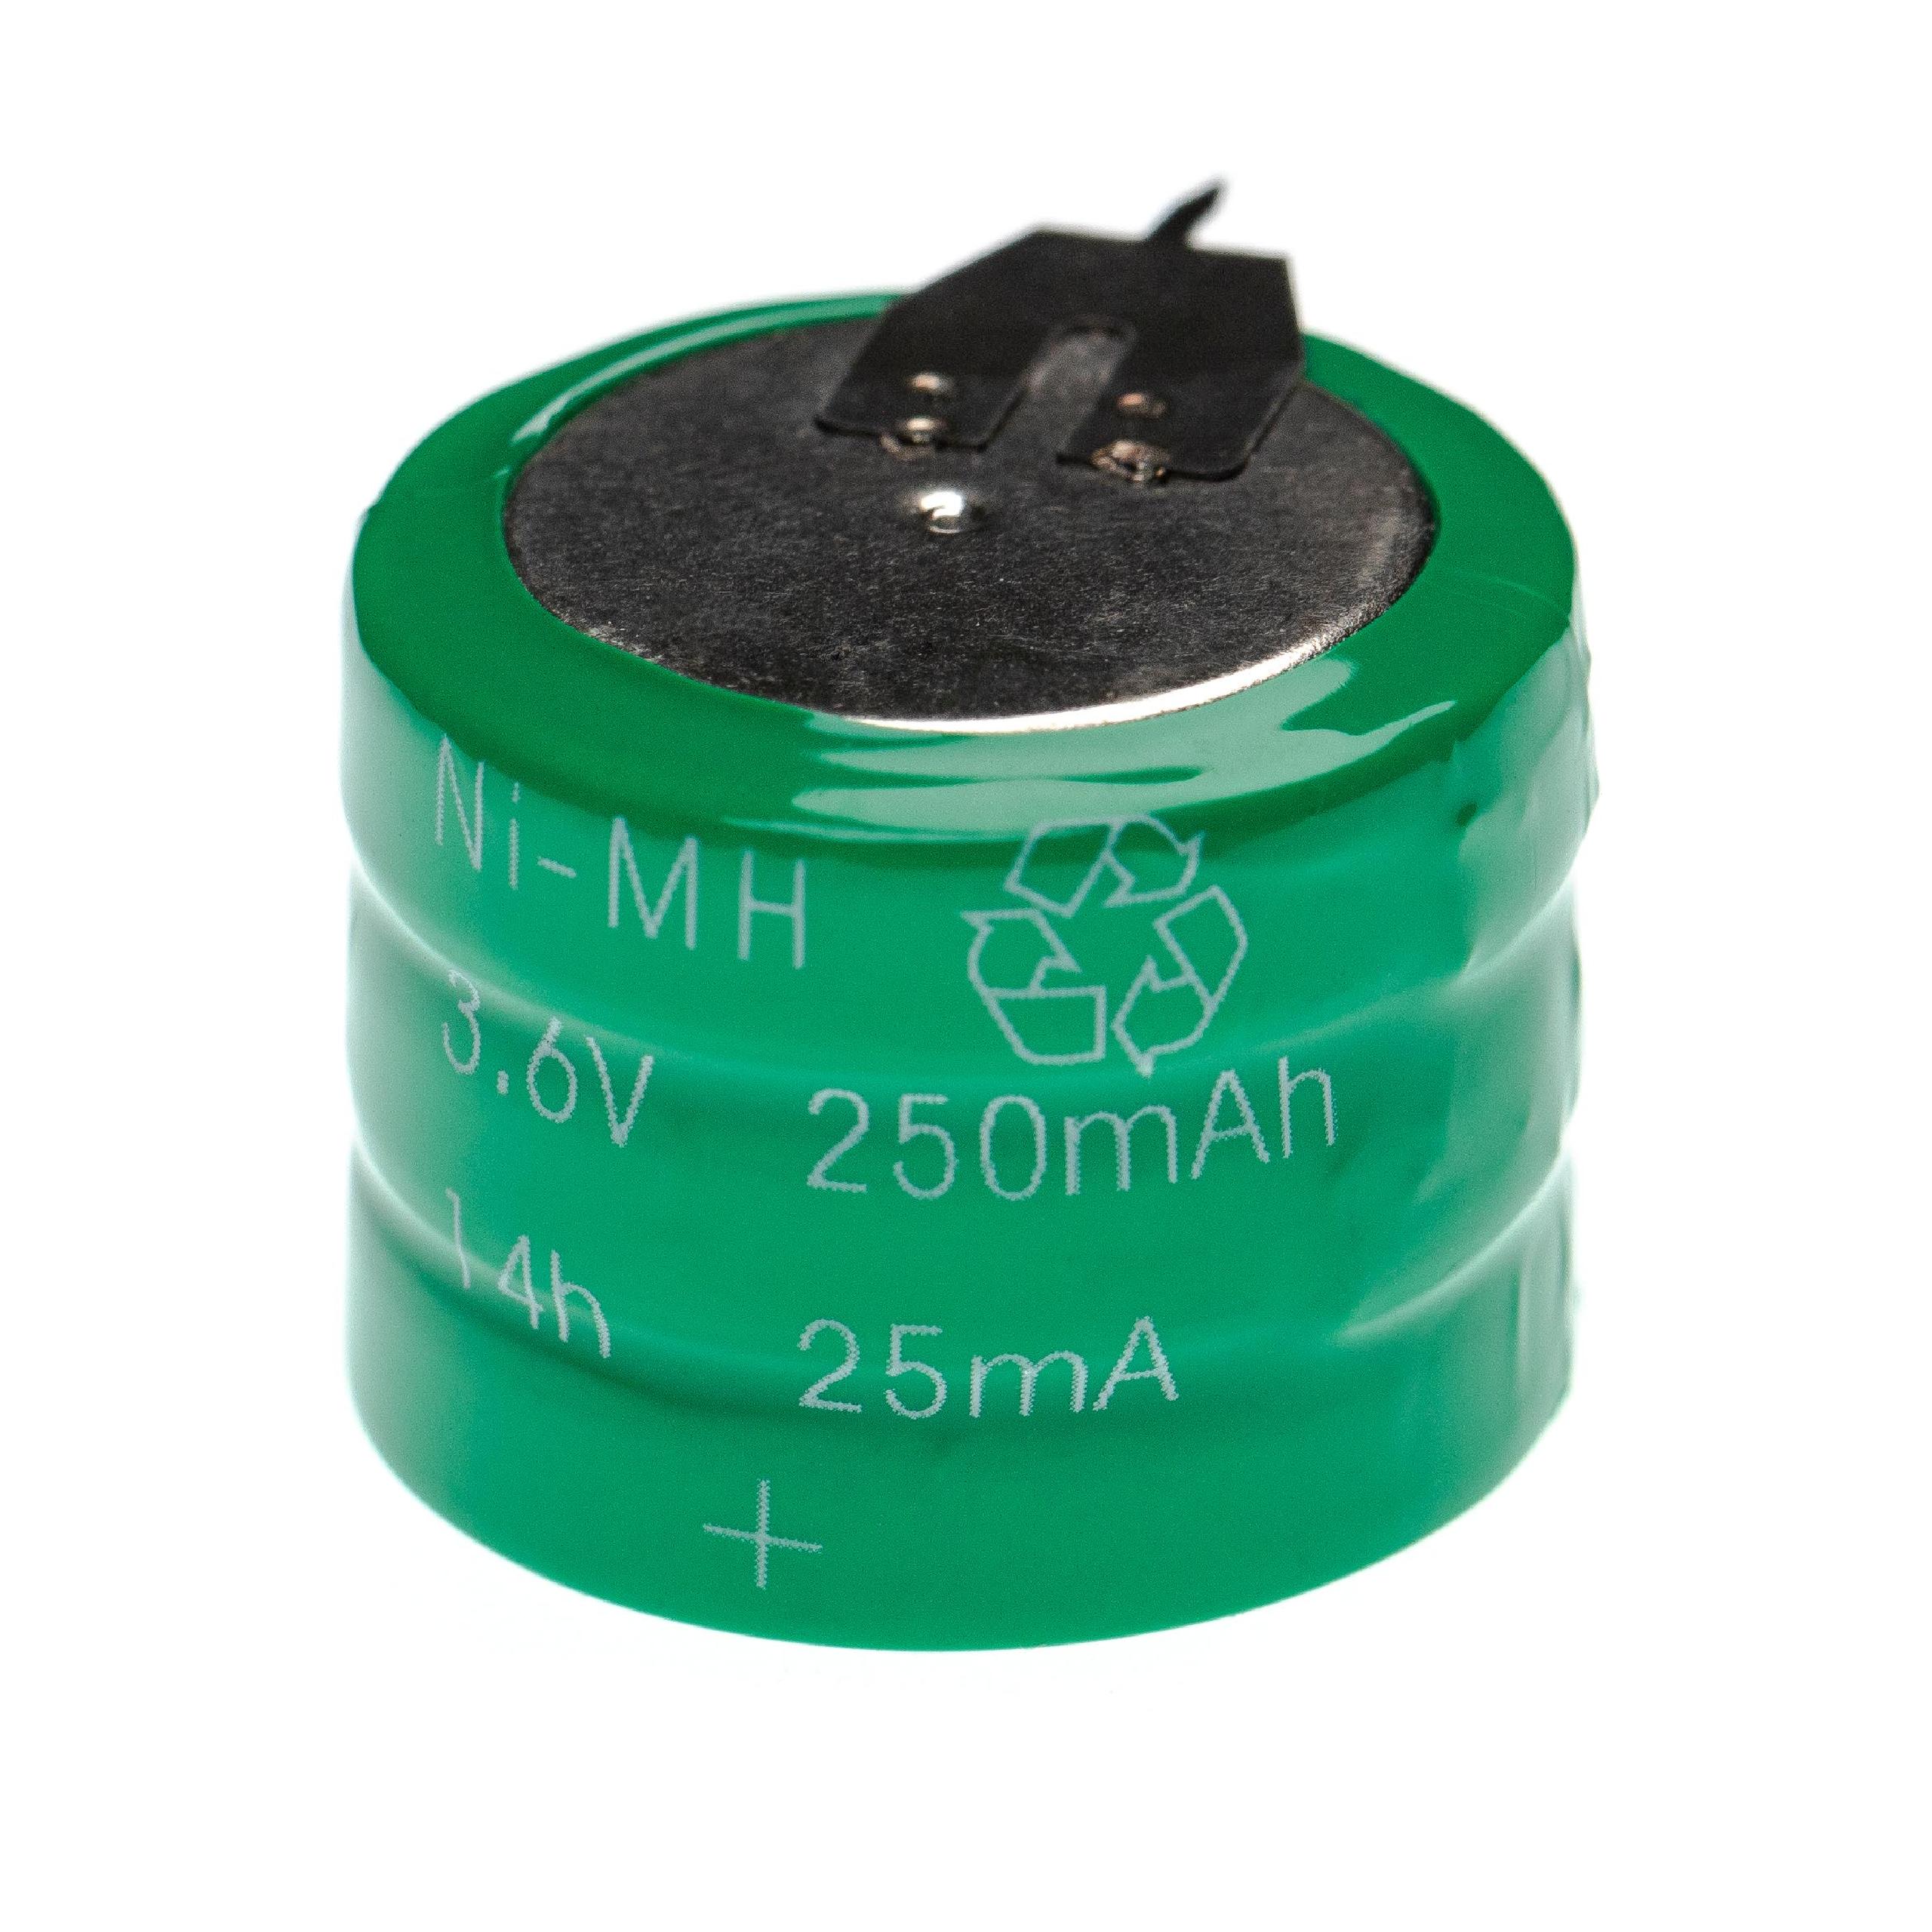 Akumulator guzikowy (3x ogniwo) typ V250H do modeli, lamp solarnych itp. zamiennik V250H - 250 mAh 3,6 V NiMH